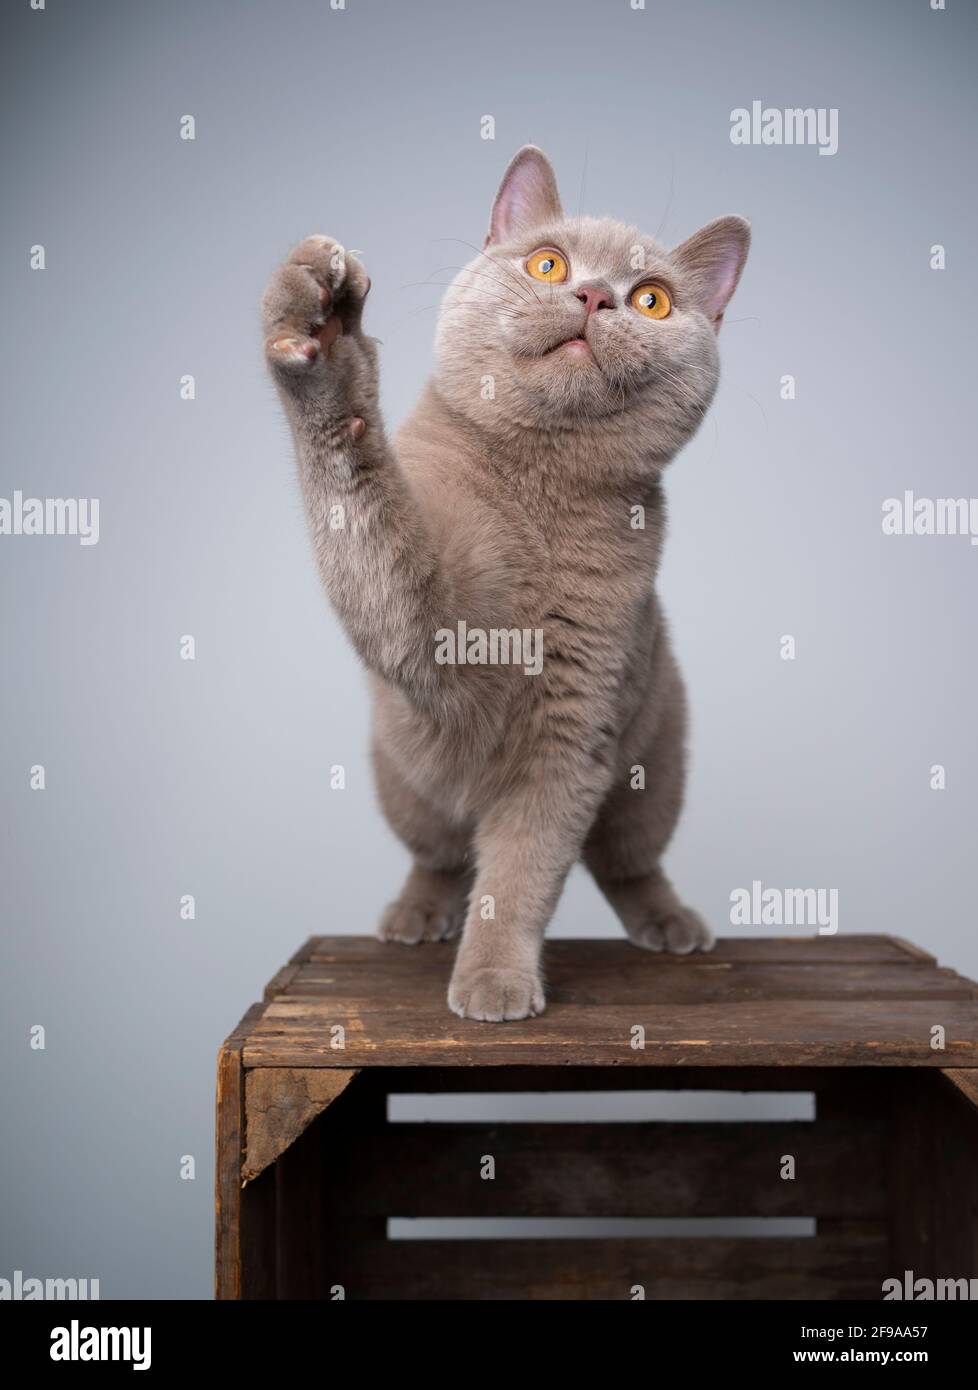 juguetón gatito británico de 6 meses de edad de silac de shortair de pie cajón de madera con mecanismo de elevación mirando hacia arriba Foto de stock